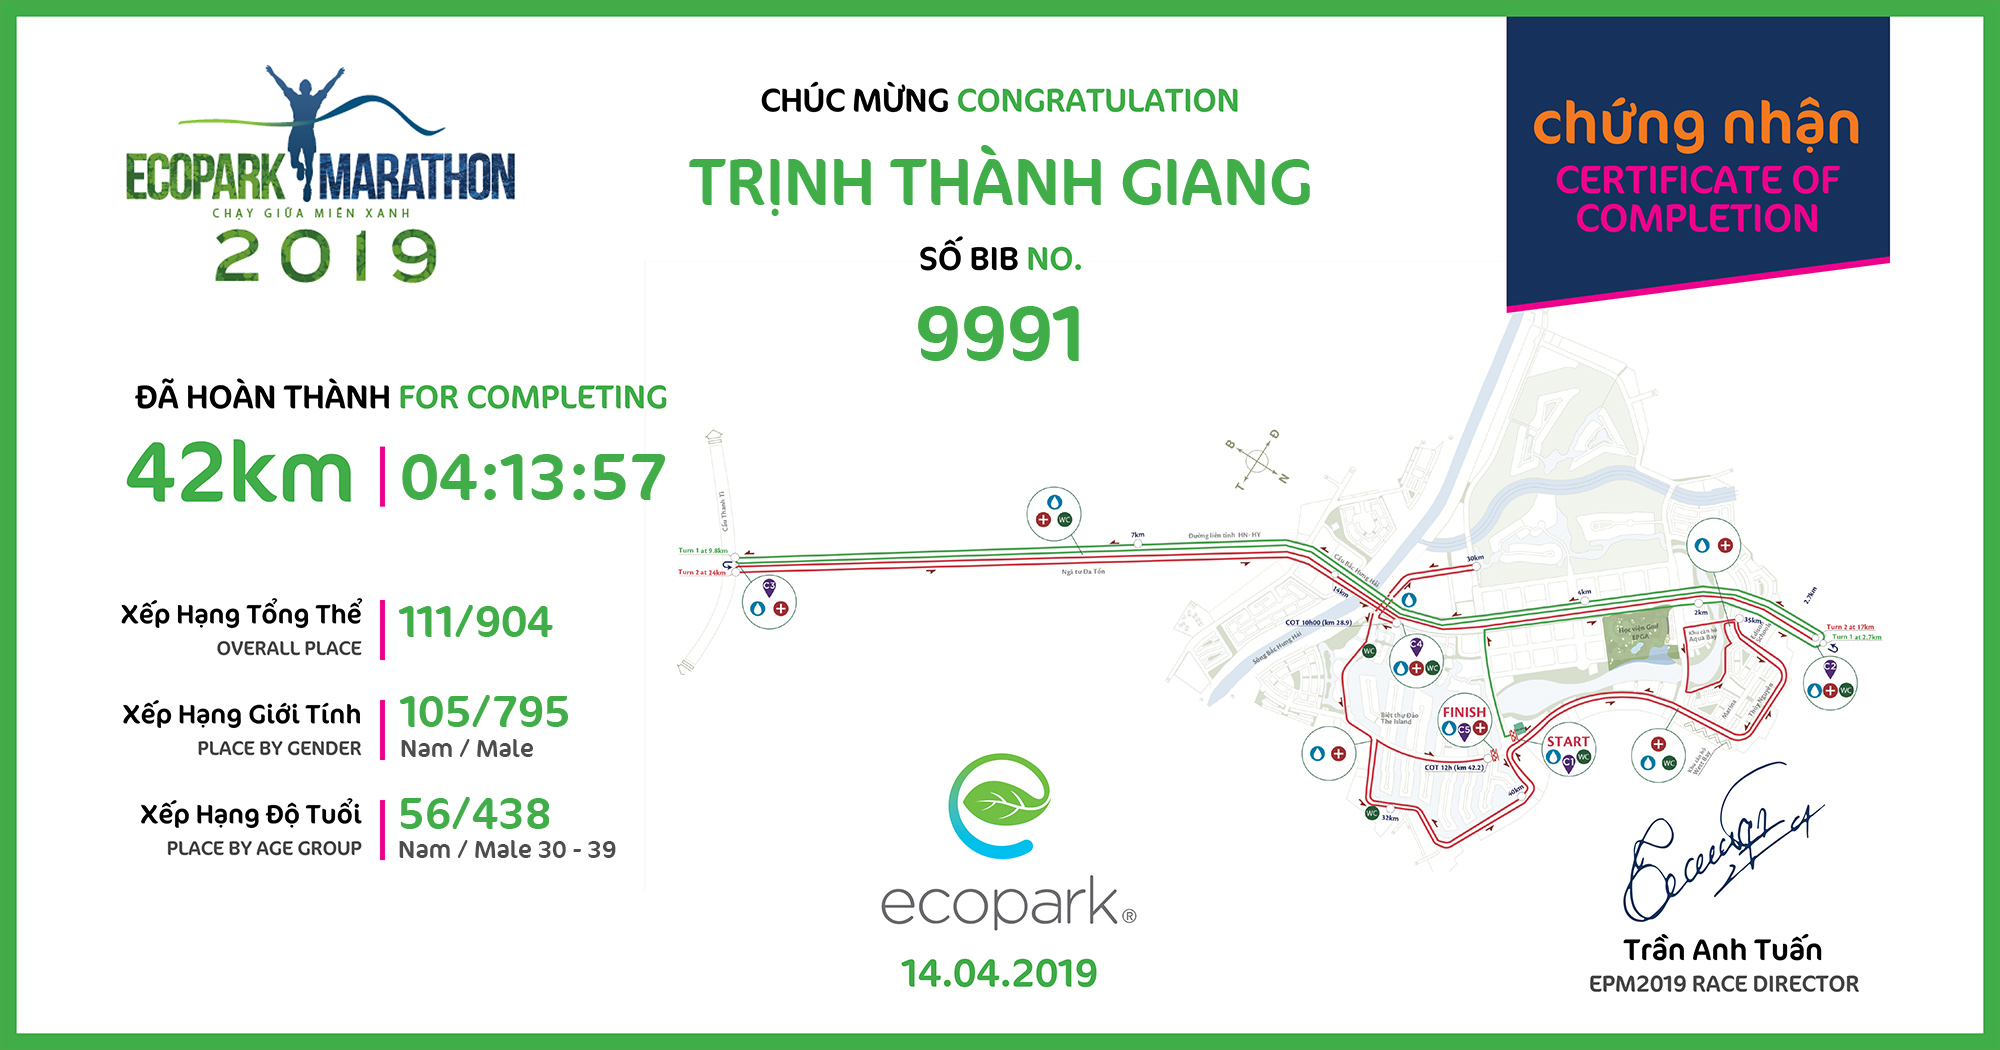 9991 - Trịnh Thành Giang